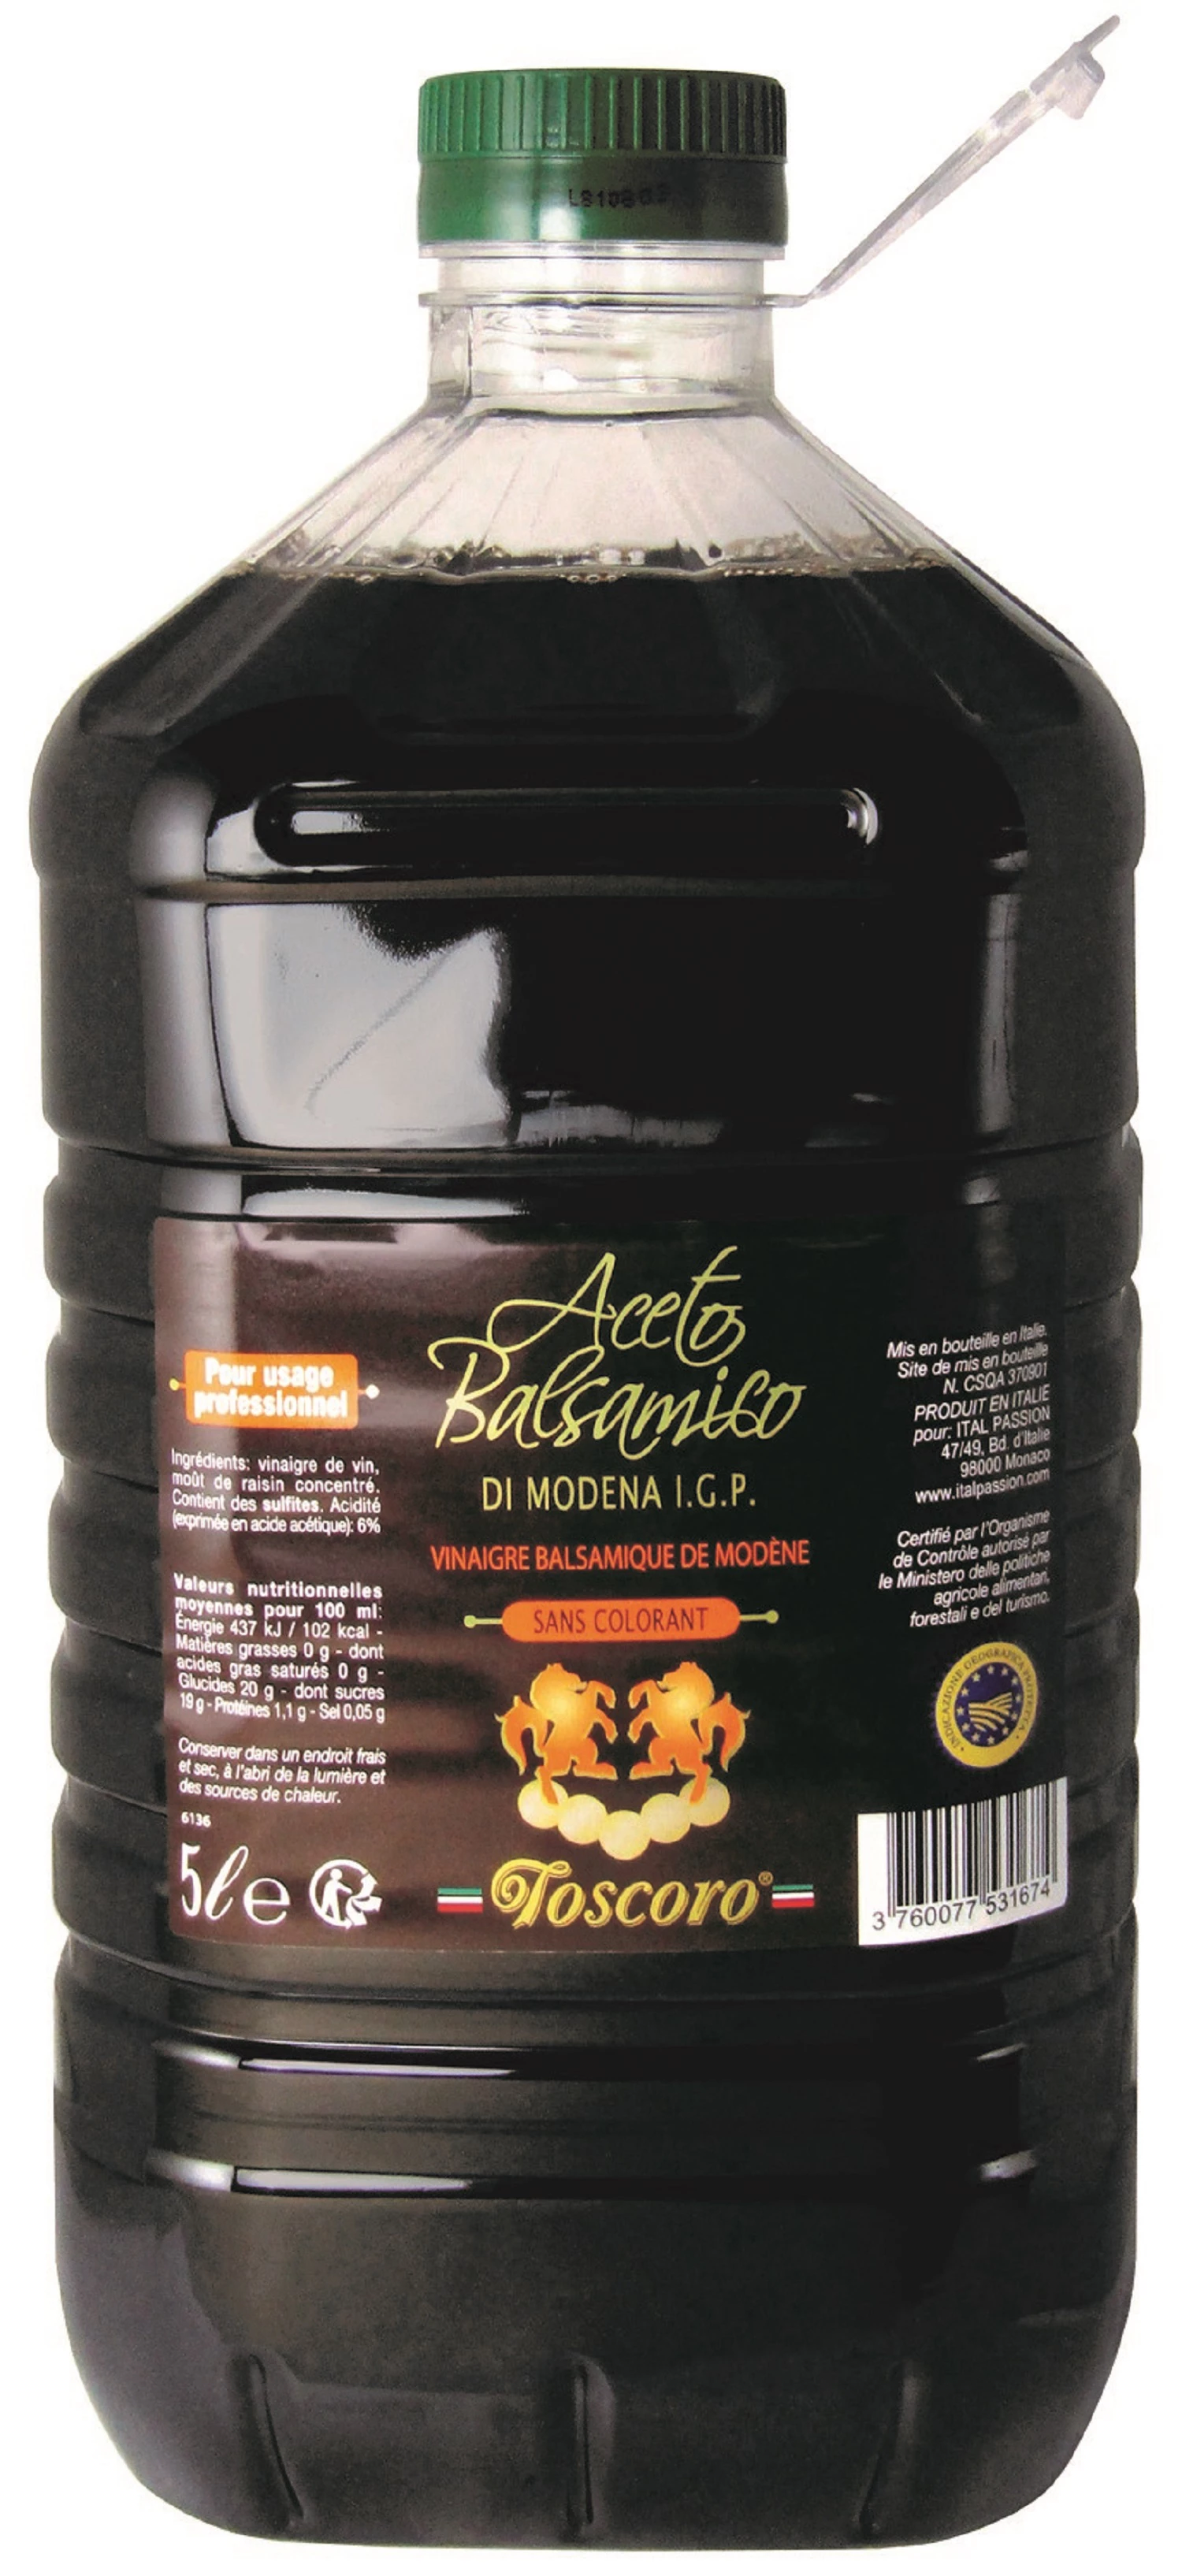 Balsamic vinegar of modena 5L - TOSCORO